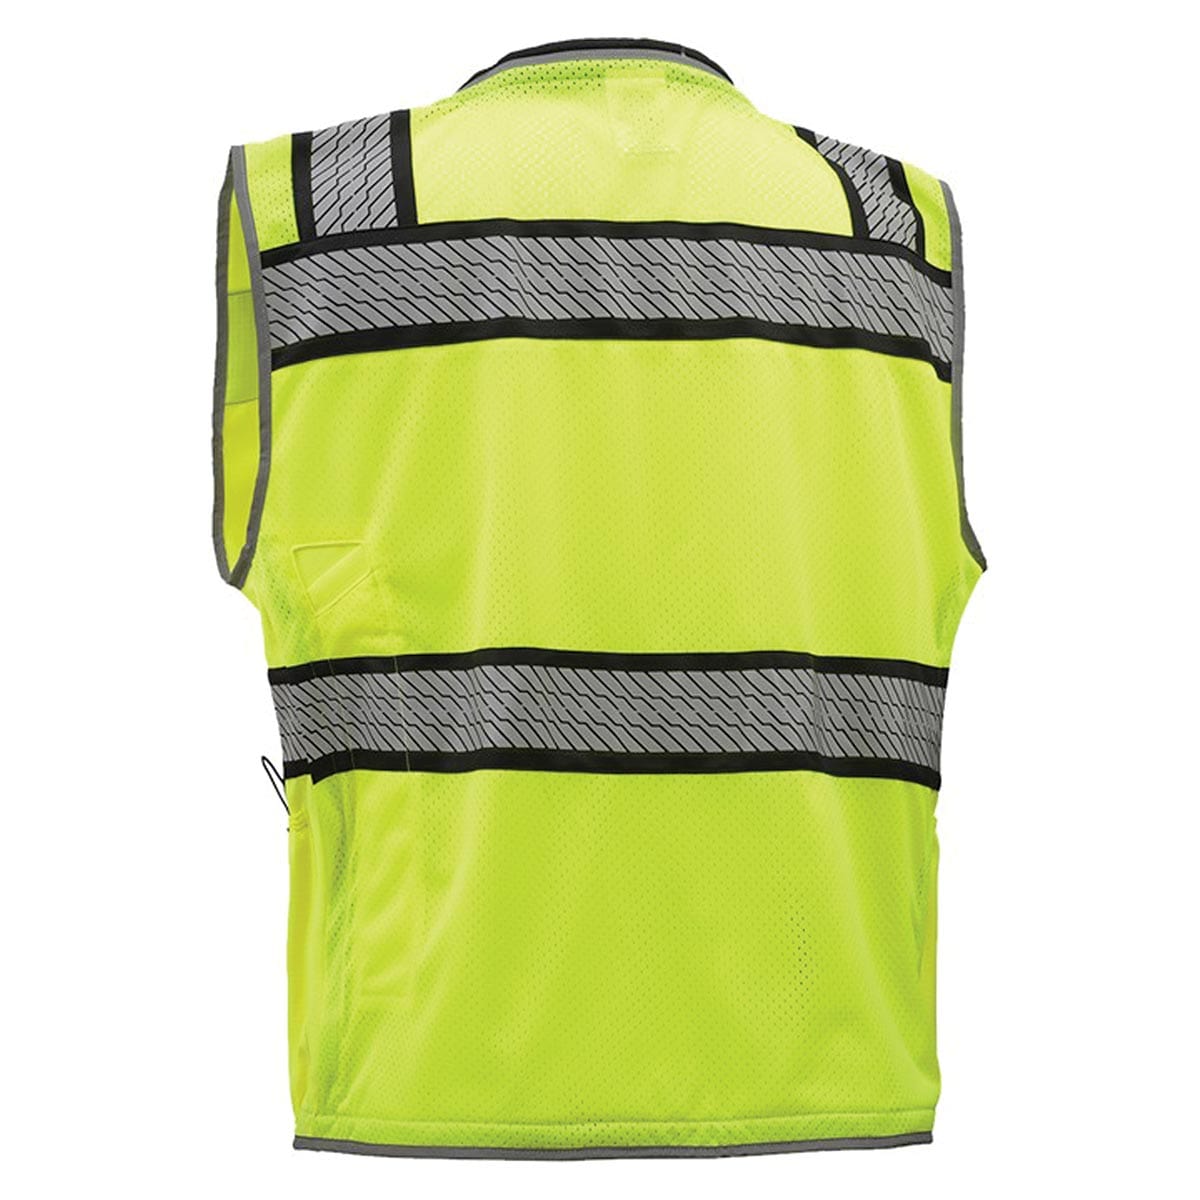 GSS Safety ANSI 2 ONYX Surveyor's Hi-Vis Safety Vest